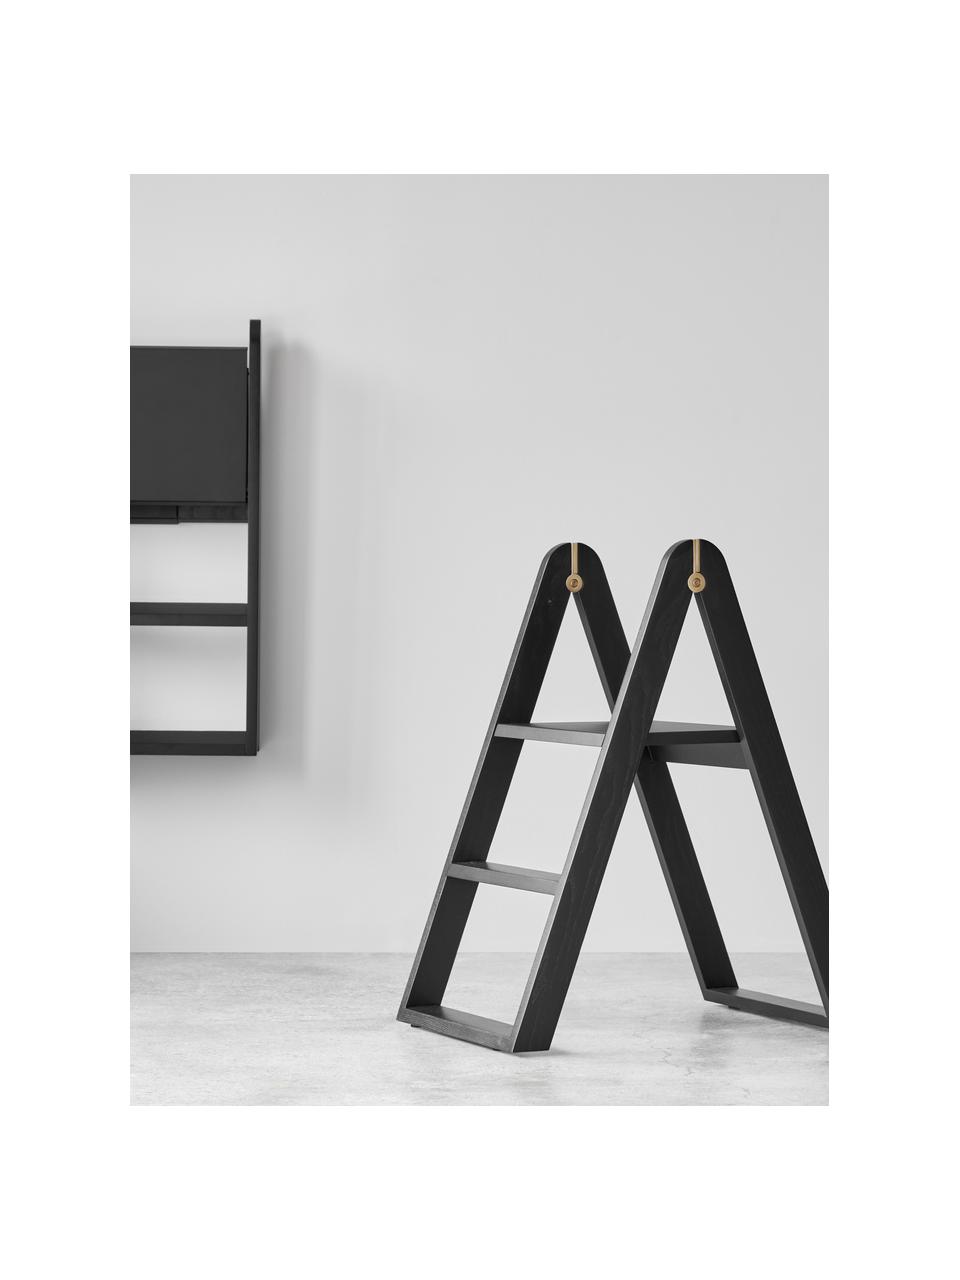 Eichenholz-Stehleiter Reech, Gestell: Eichenholz, lackiert, Schwarz, B 40 x H 72 cm